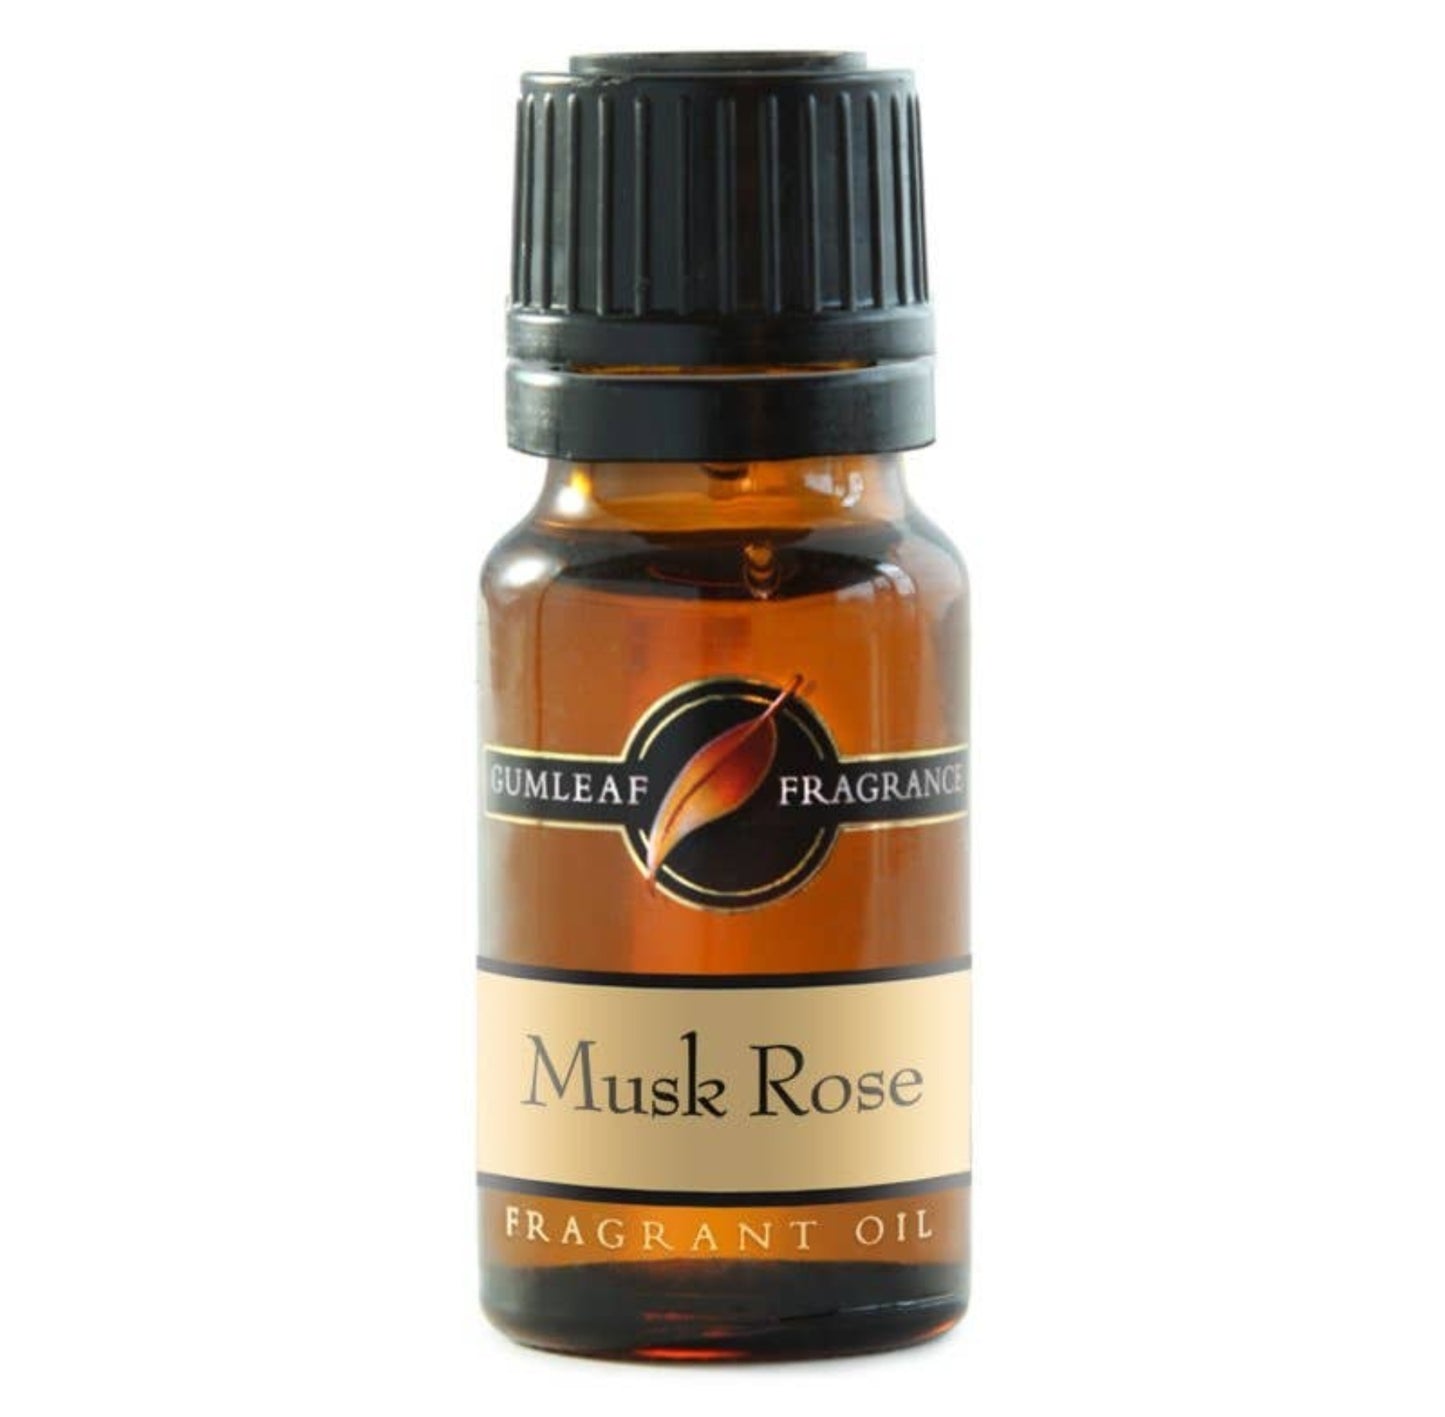 Musk Rose Fragrance Oil